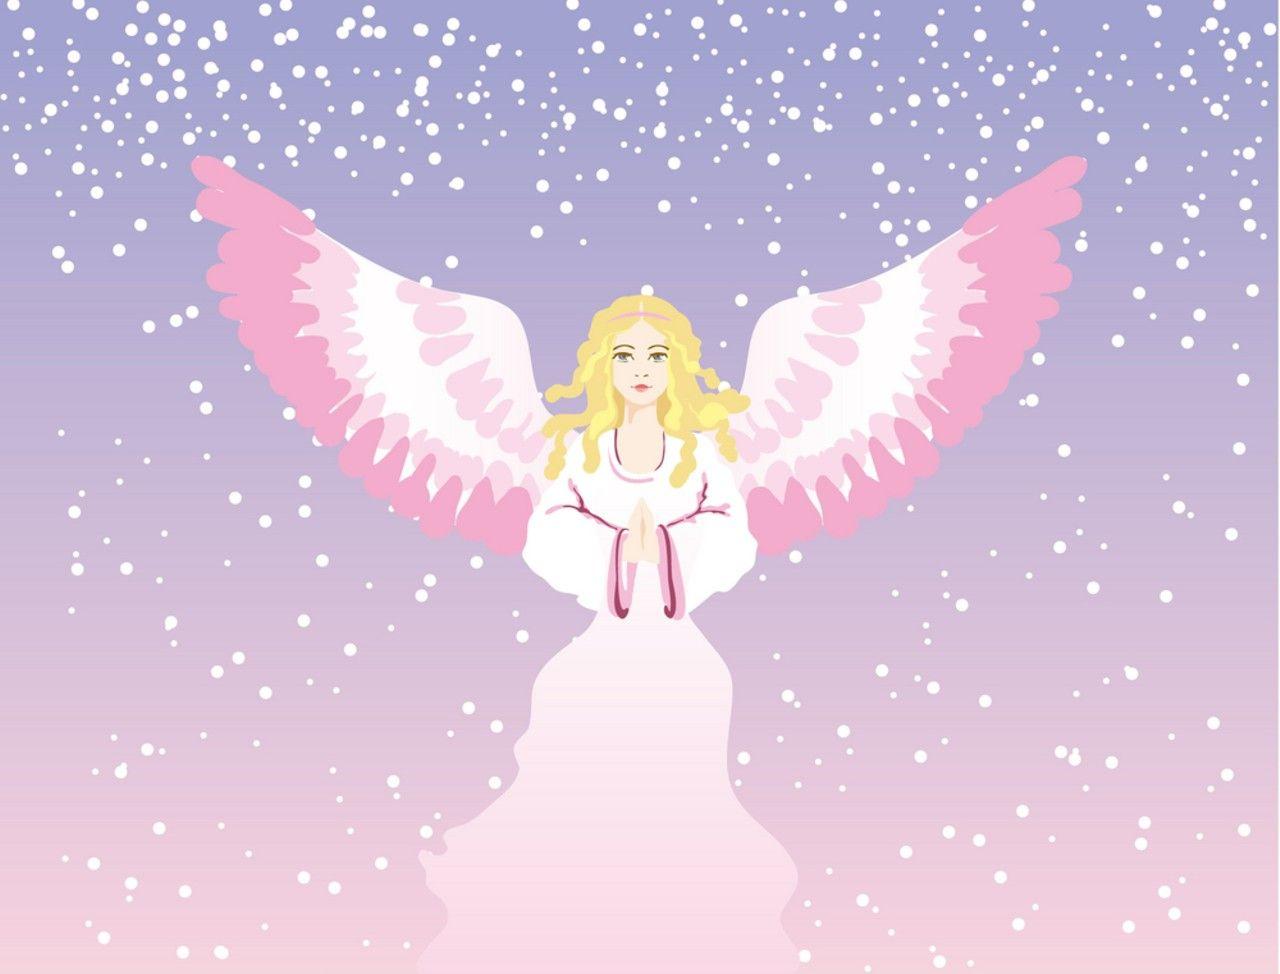 Christmas Angel Image. Full Desktop Background